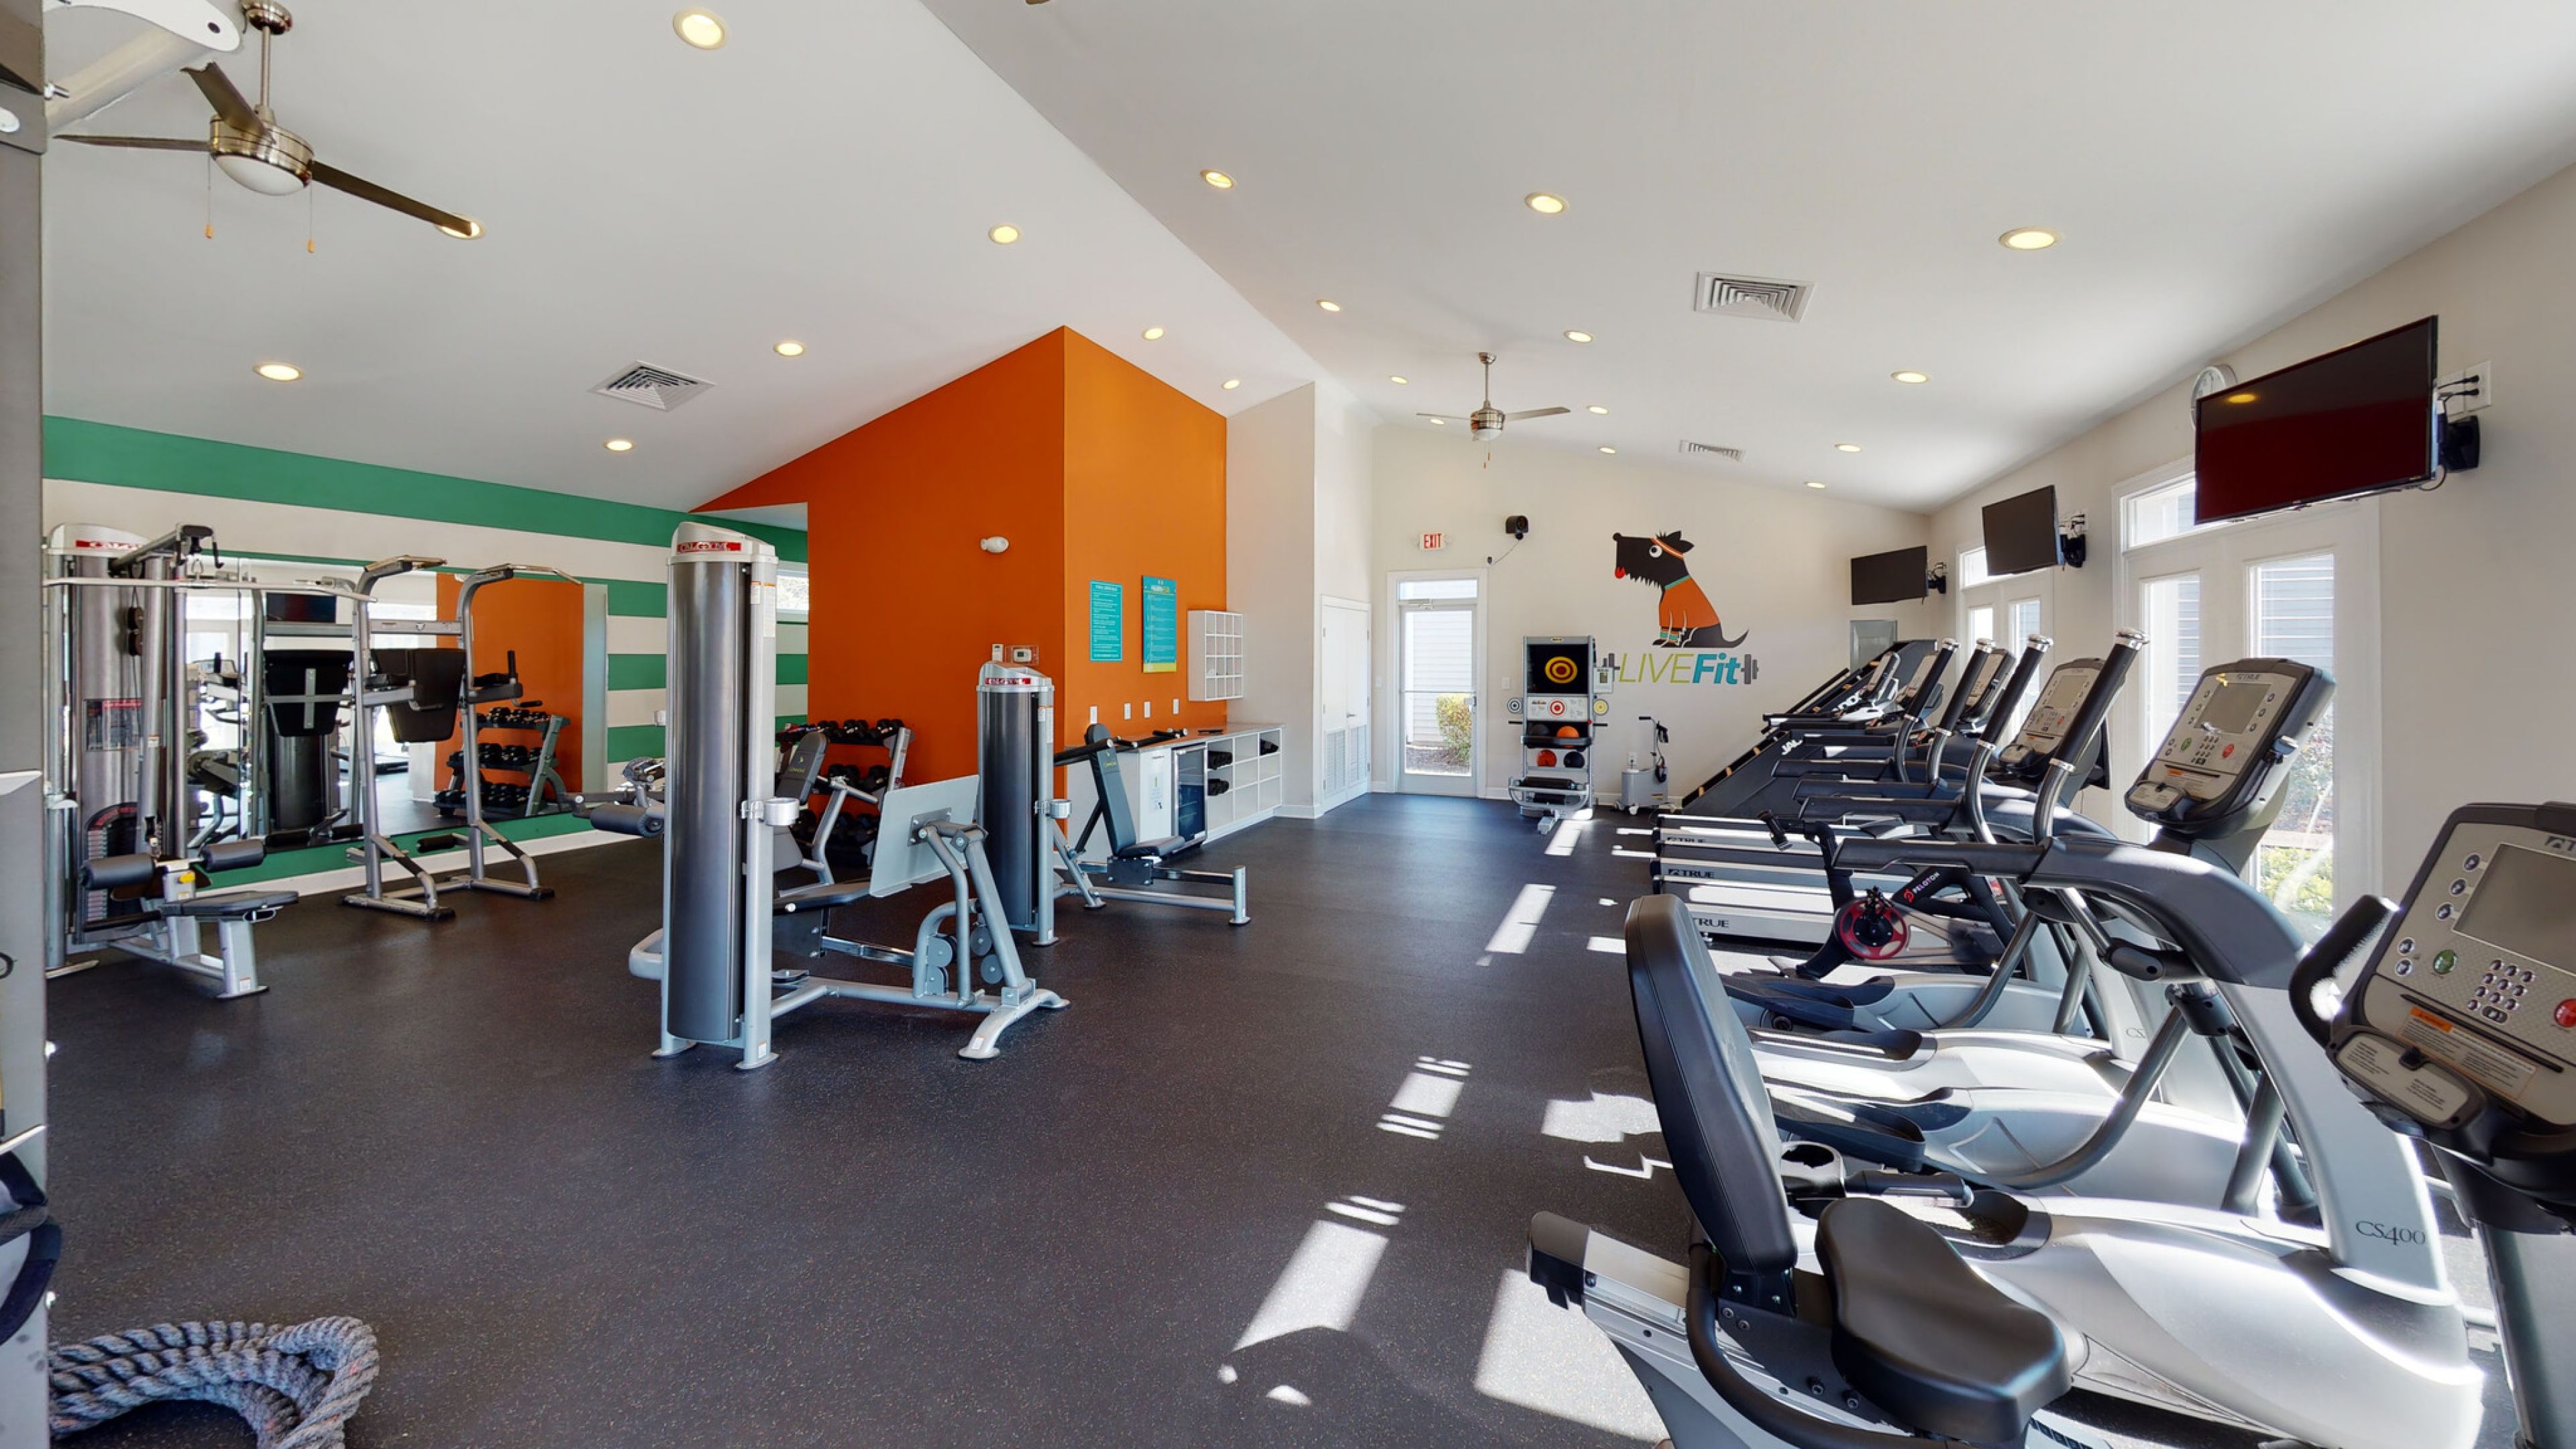 Hawthorne Commons resident fitness center with modern training equipment